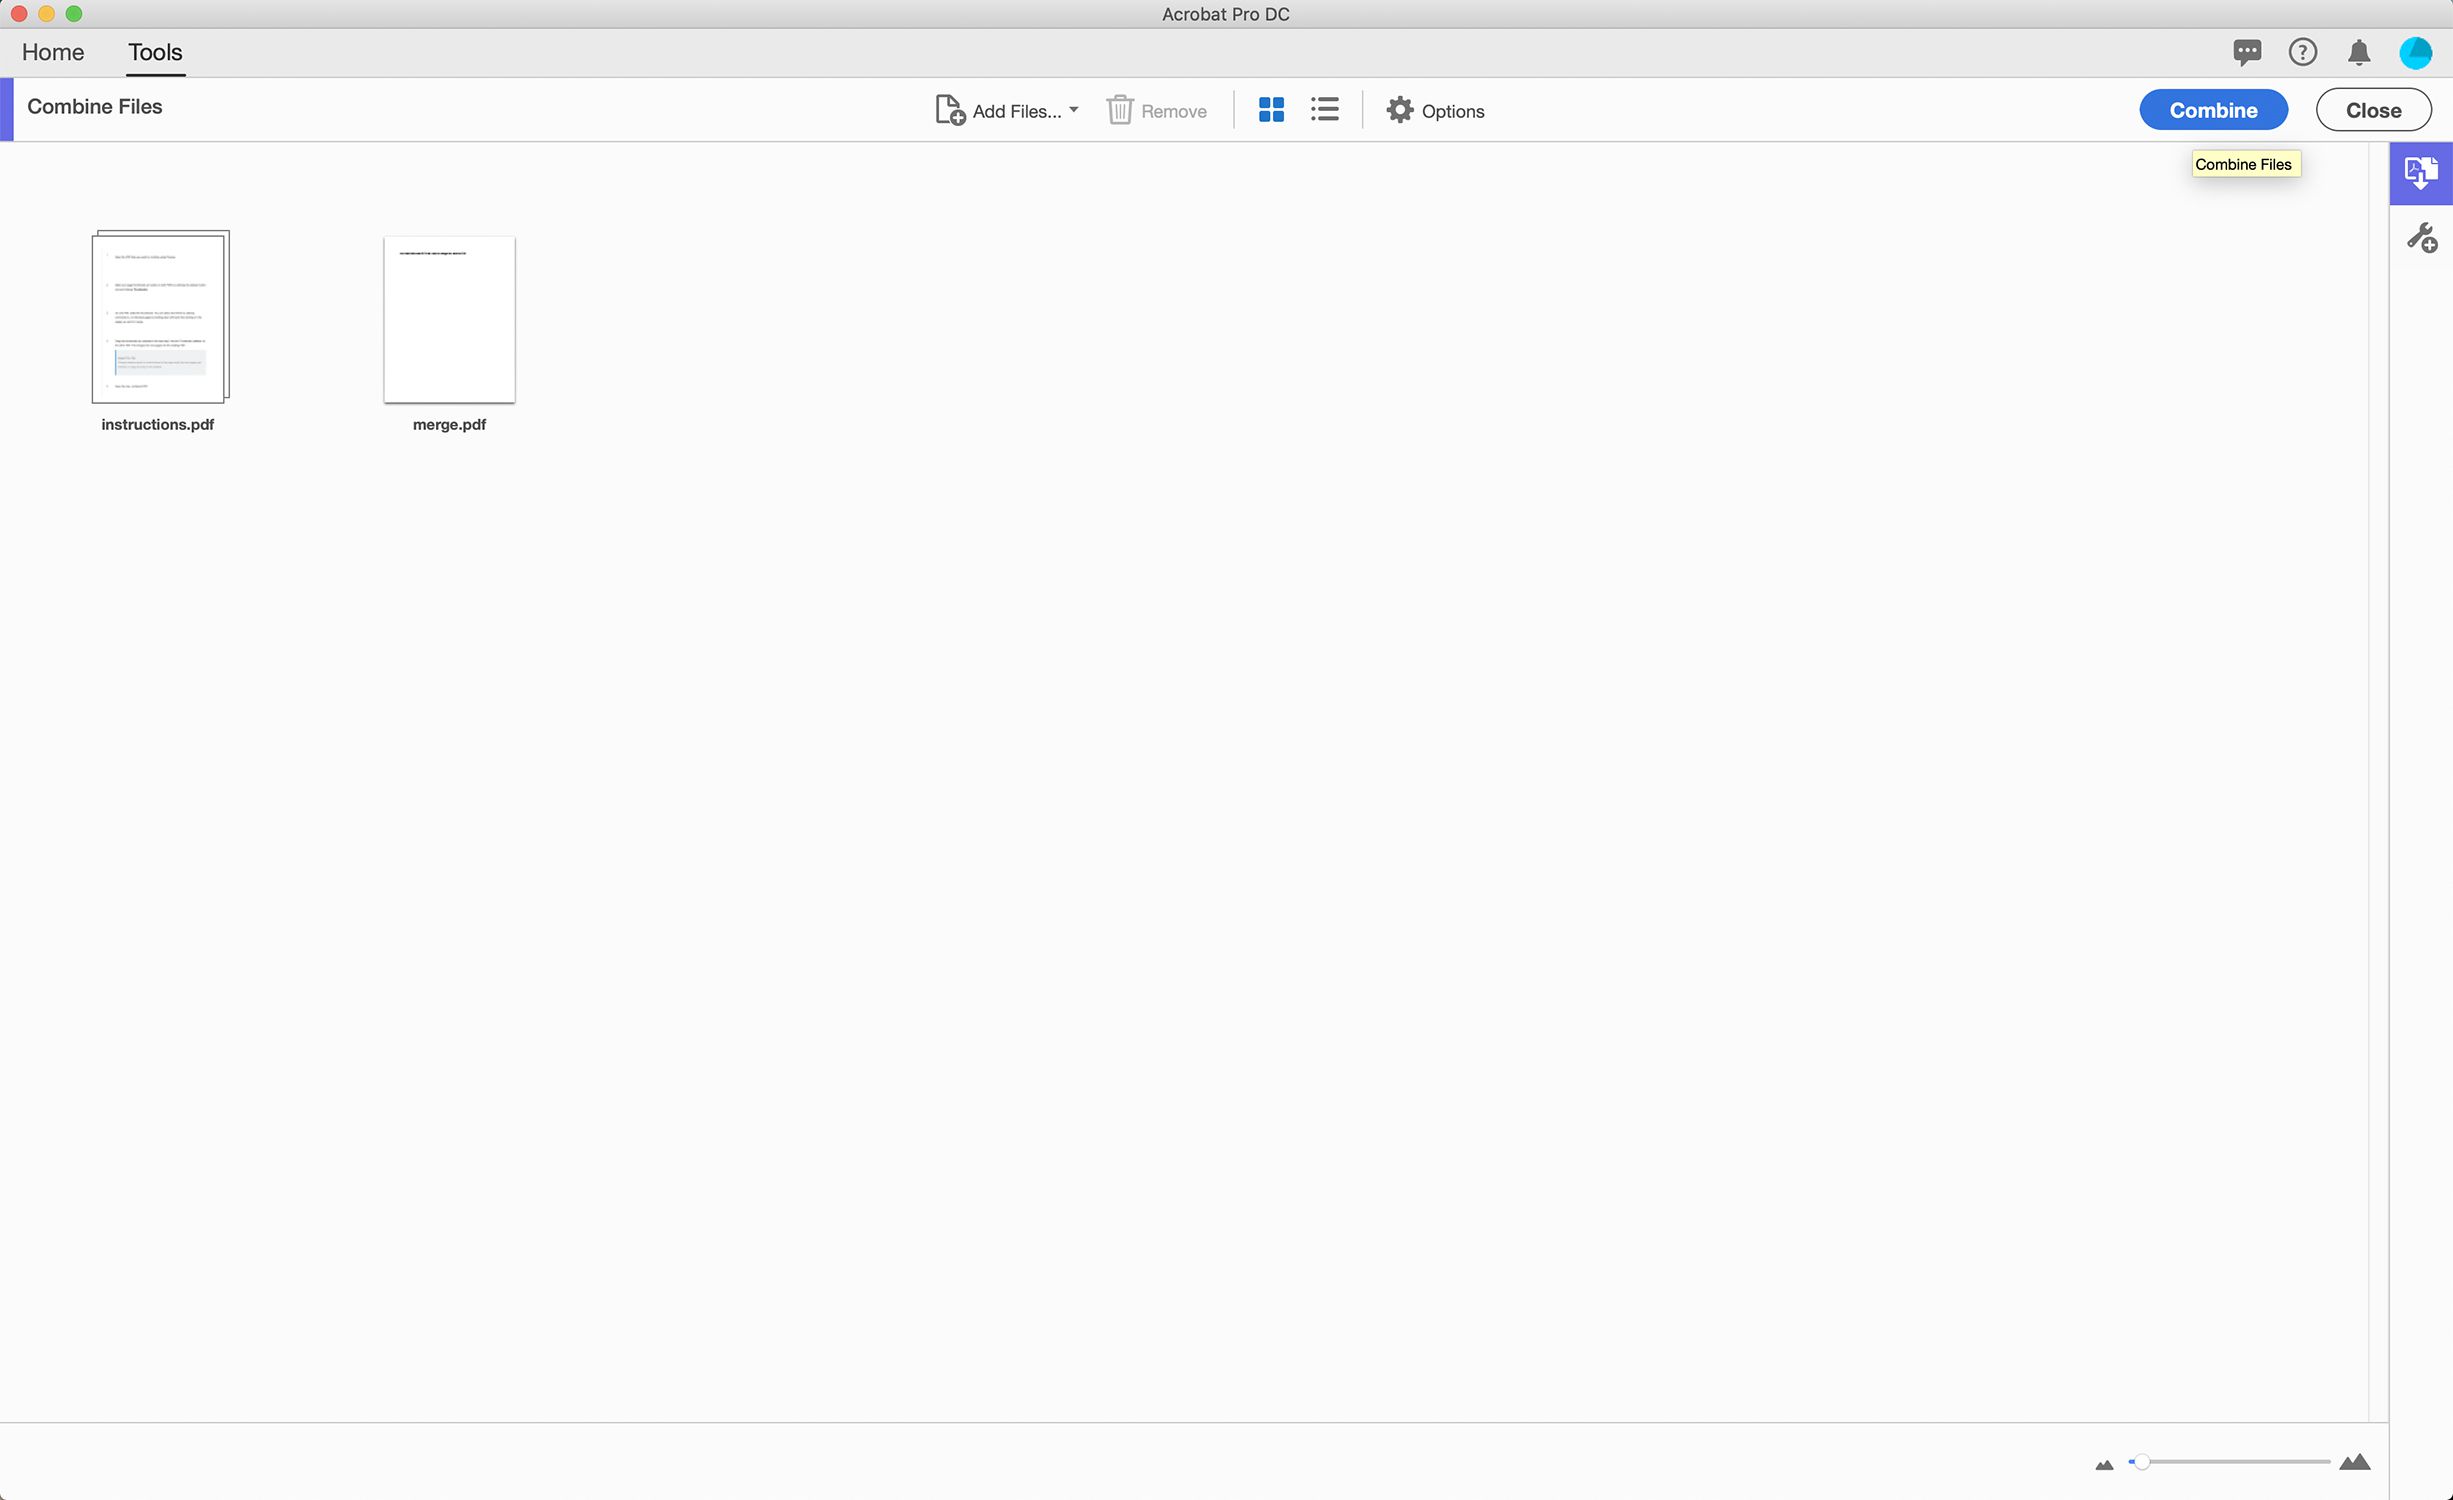 Captura de tela da combinação de PDFs no Adobe Acrobat